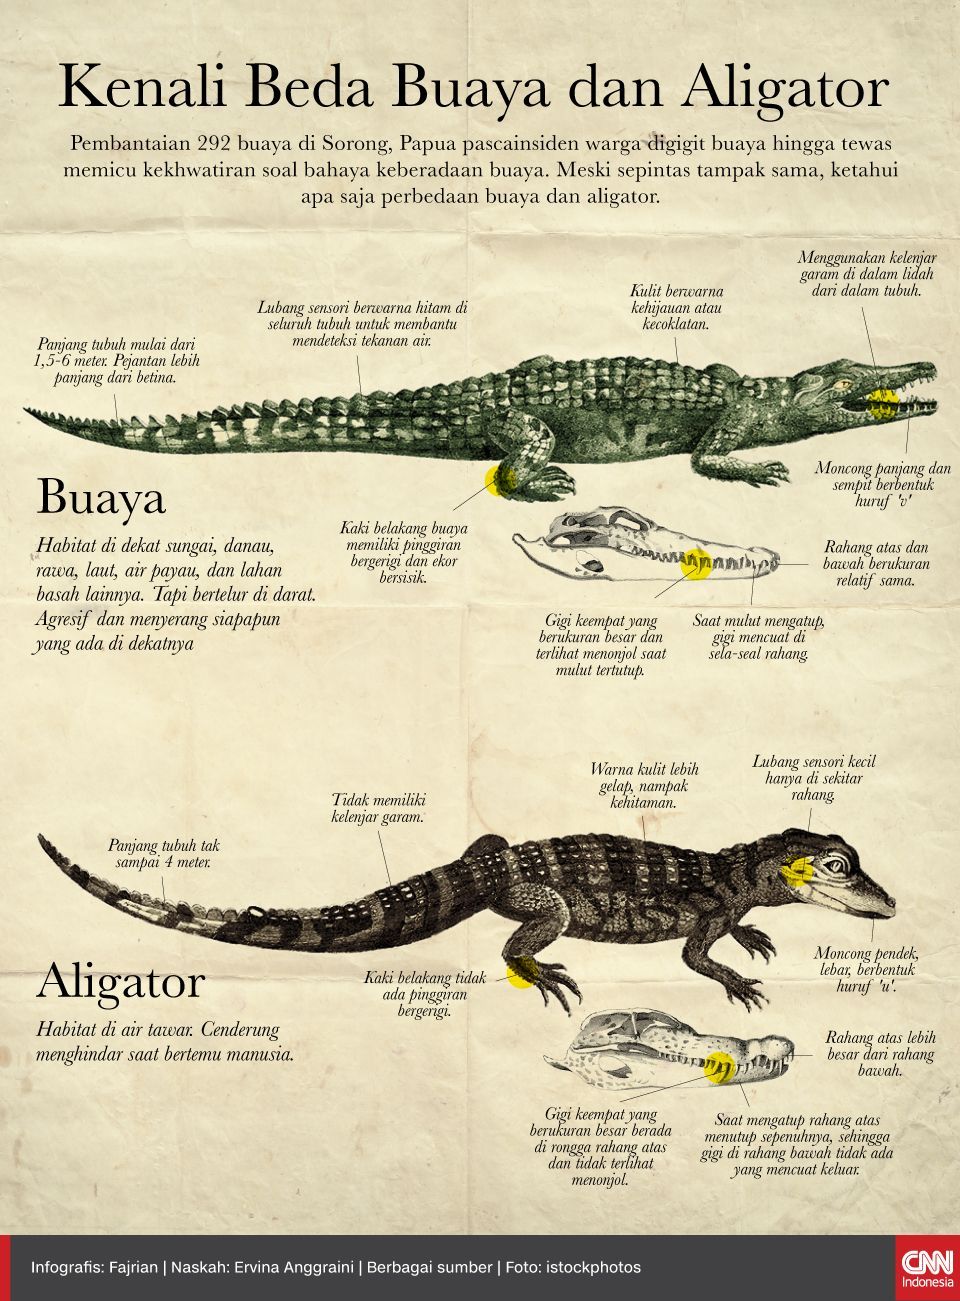 Infografis Kenali Beda Buaya kemudian Aligator